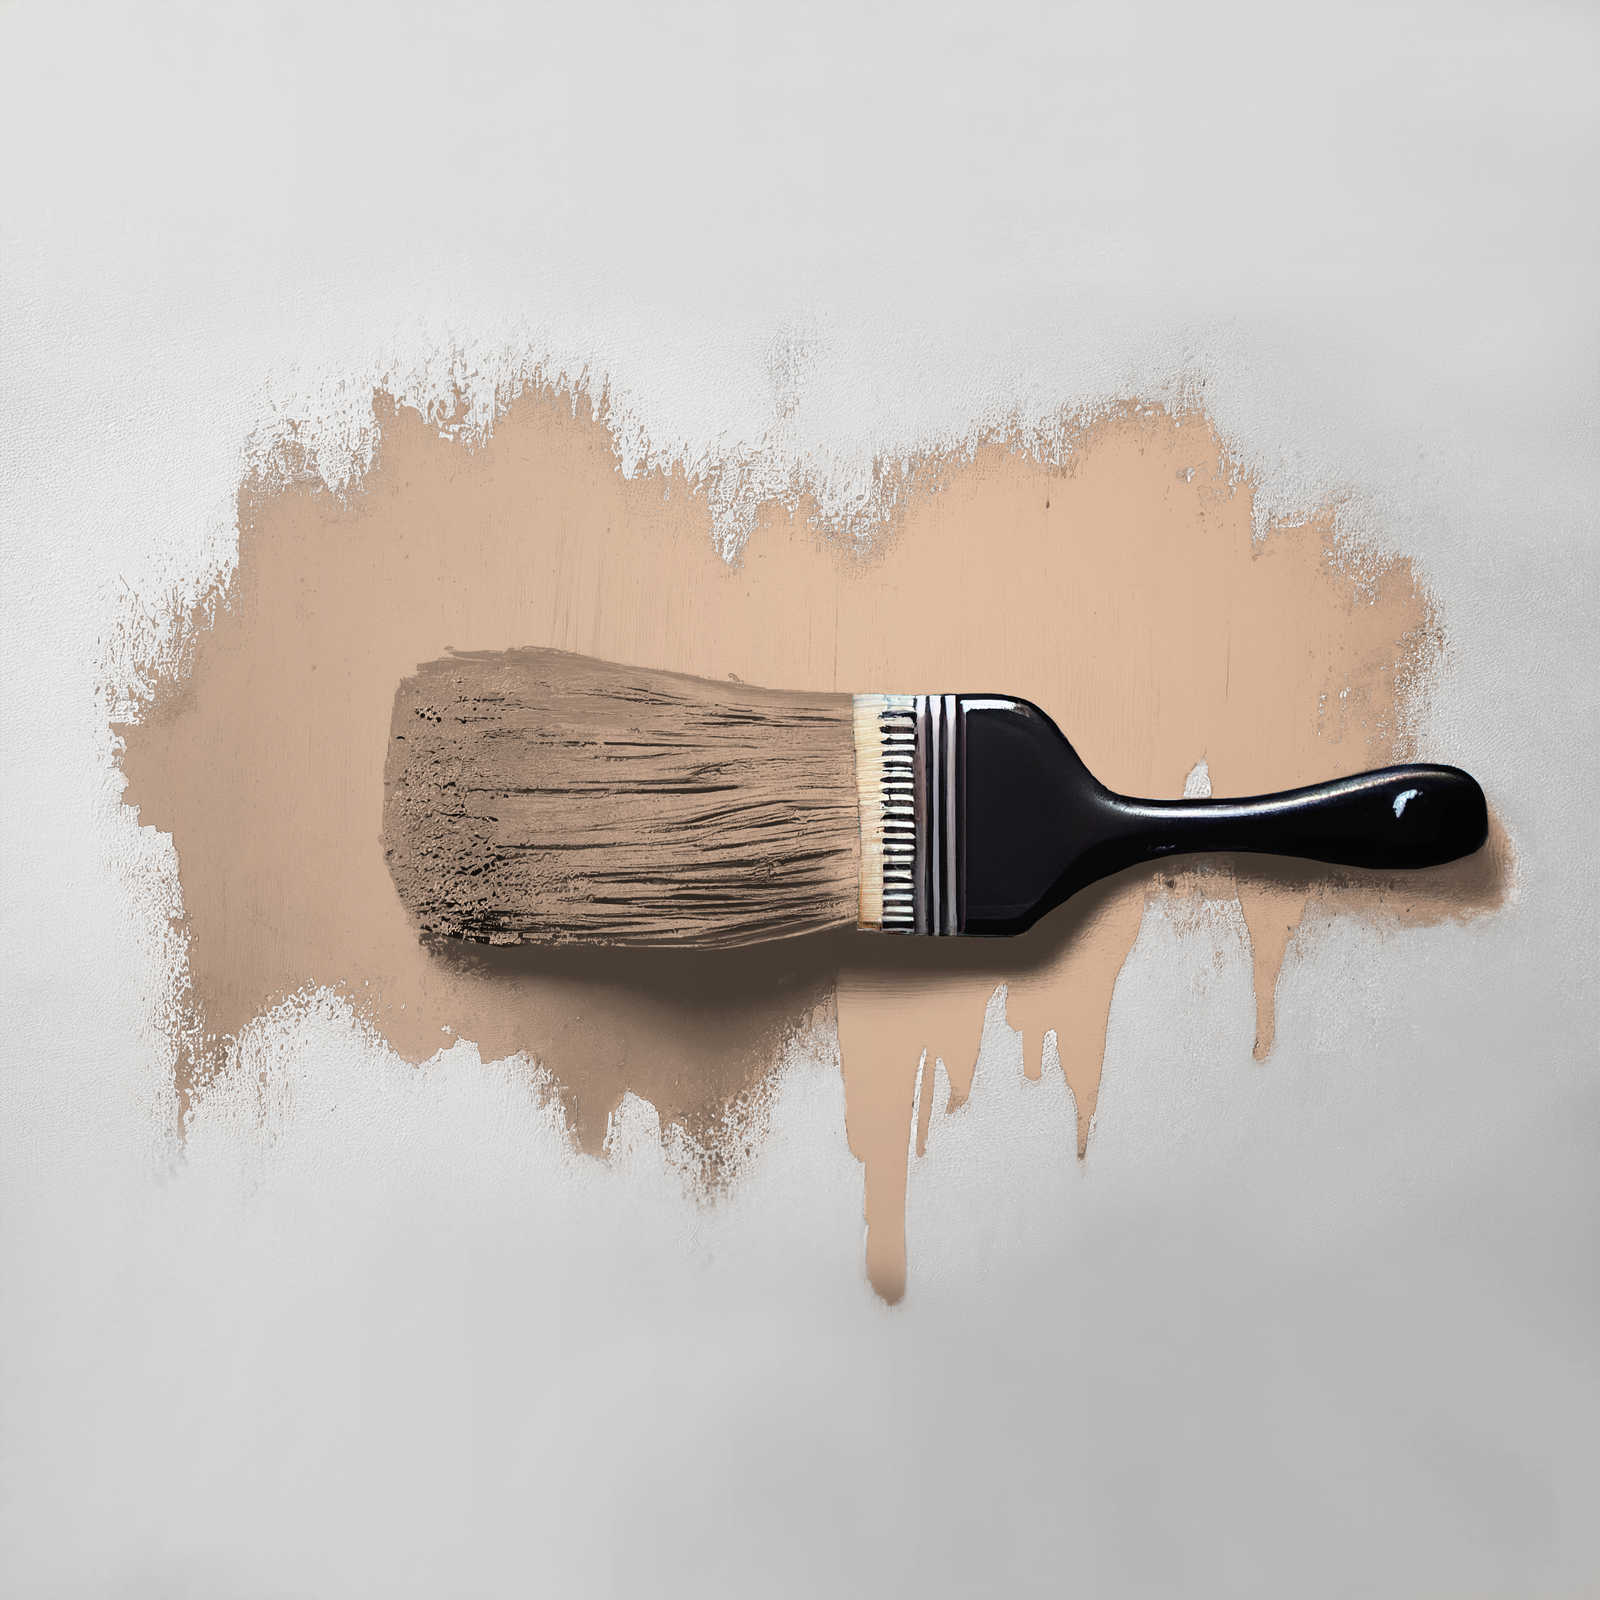             Pintura mural TCK6021 »Lovely Lentil« en beige cálido – 5,0 litro
        